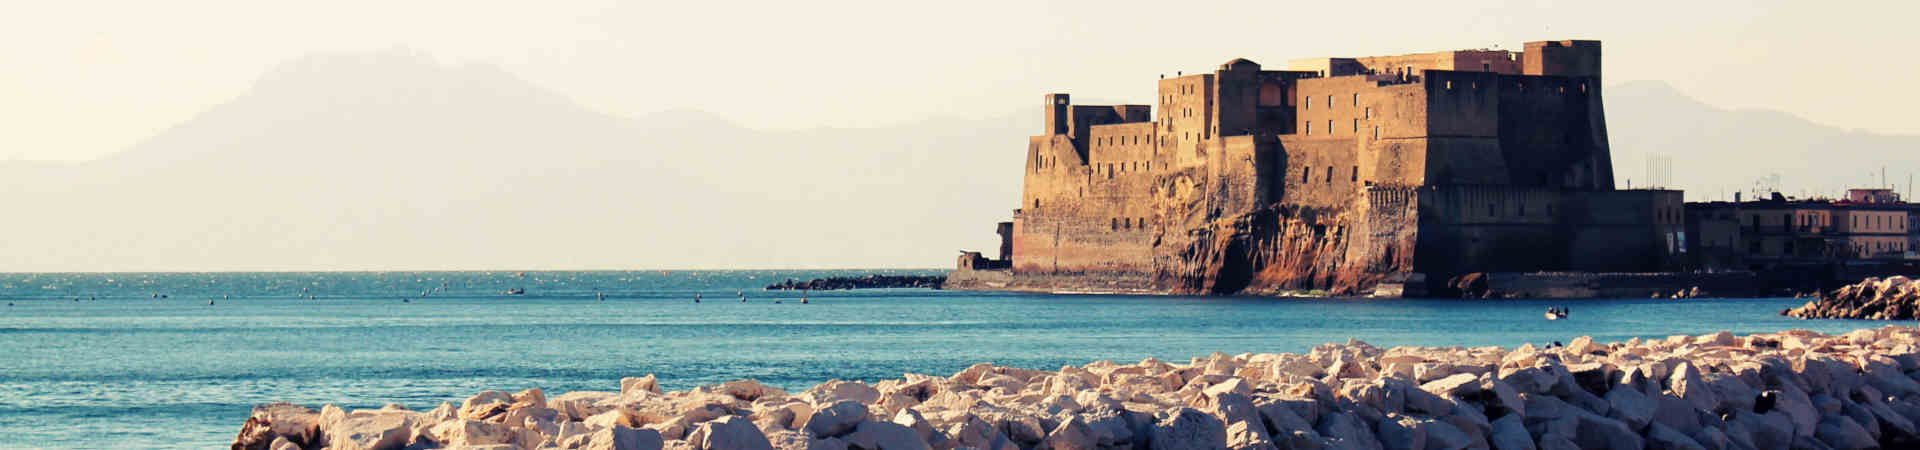 Imagen recurso del puerto de destino Nápoles para la ruta en ferry Palermo - Nápoles